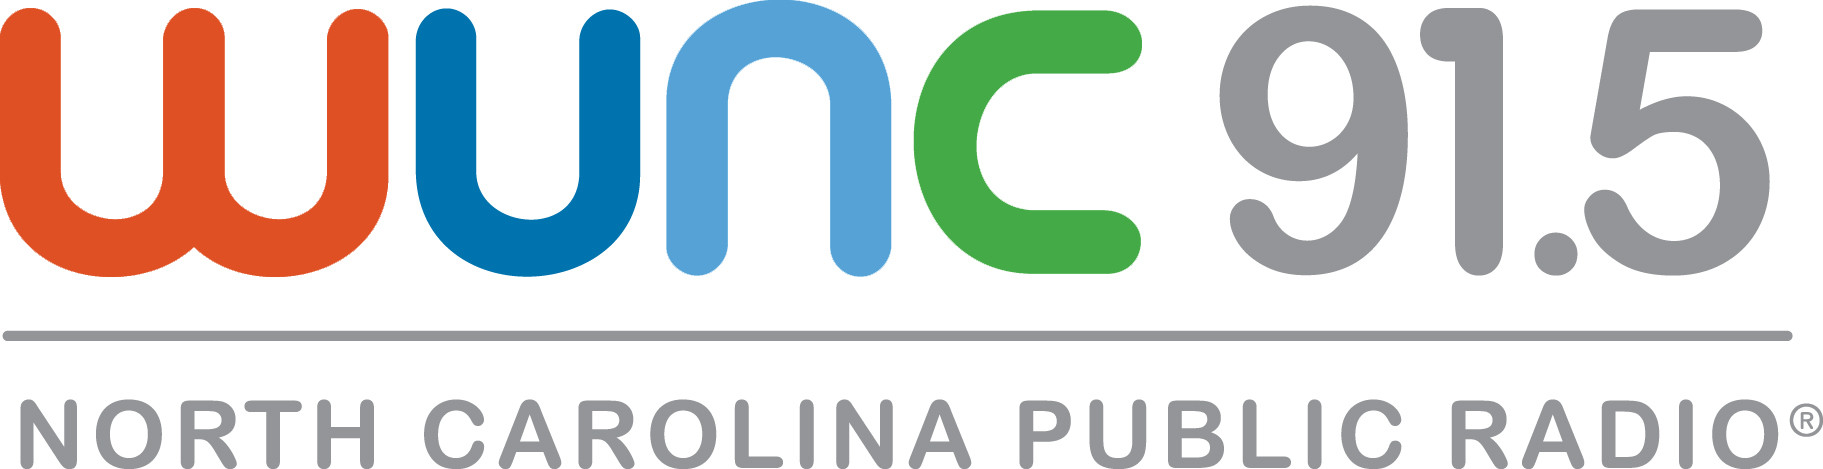 WUNC logo